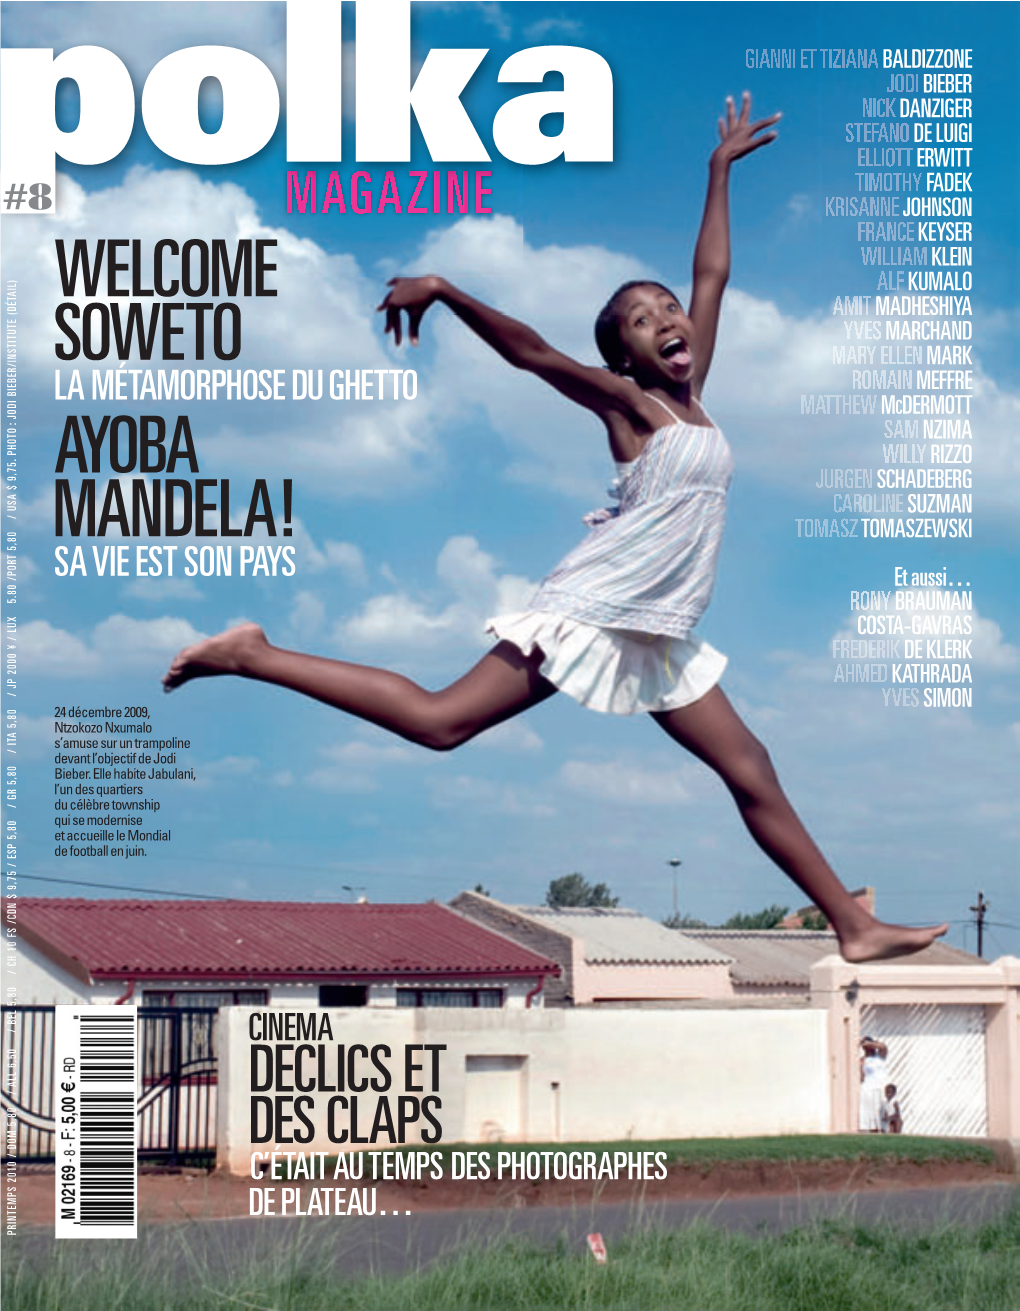 Welcome Soweto Ayoba Mandela!